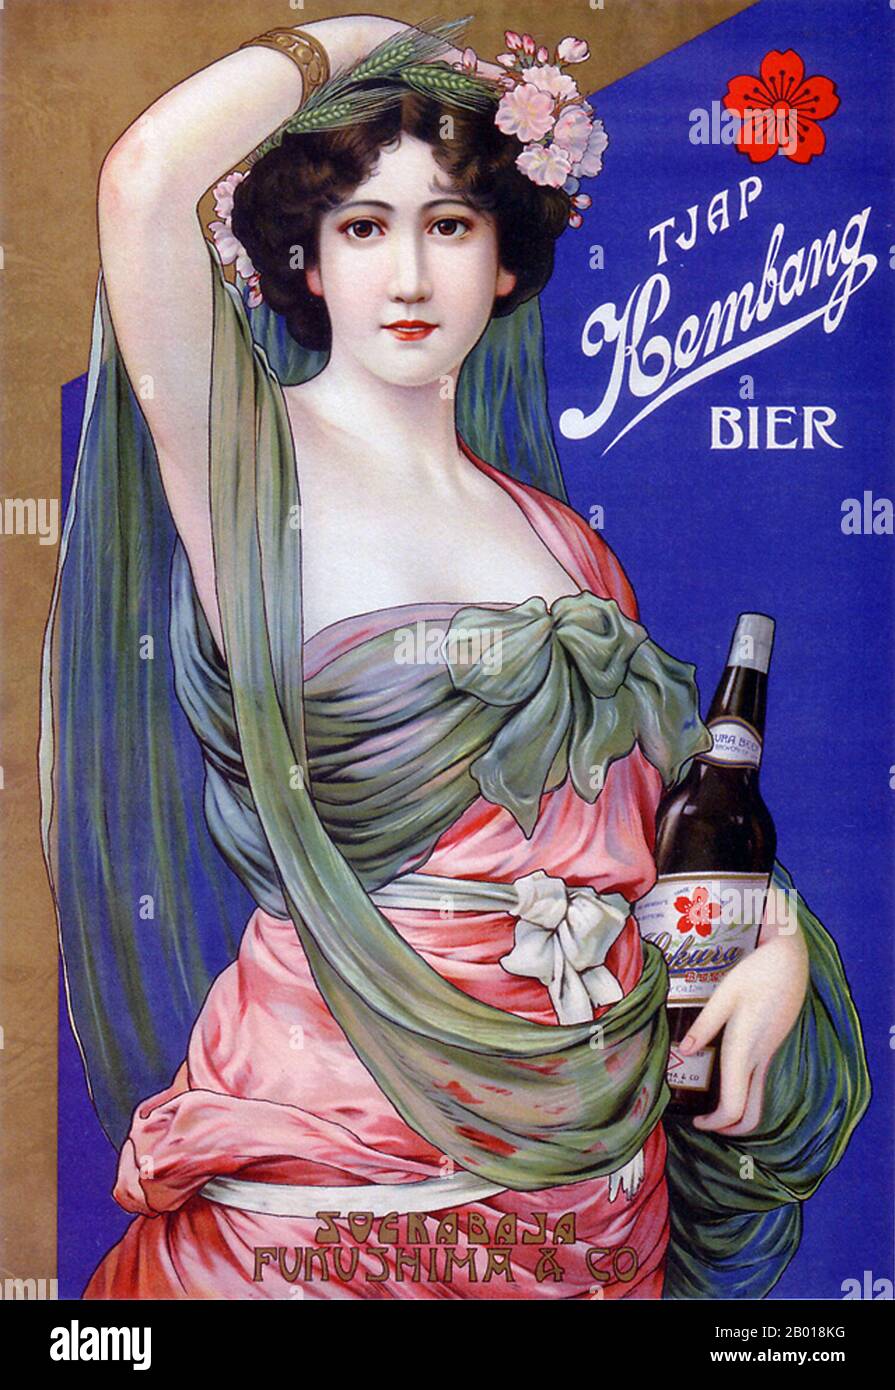 Japon : affiche publicitaire pour la bière Kembang (Sakura Export), c. 1912-1916. Une femme européenne annonce la bière Kembang (Sakura export) apparemment destinée à un marché européen (ou expatrié) - peut-être une entreprise commune néerlandaise basée dans les Indes néerlandaises (Surabaya, Indonésie). Banque D'Images